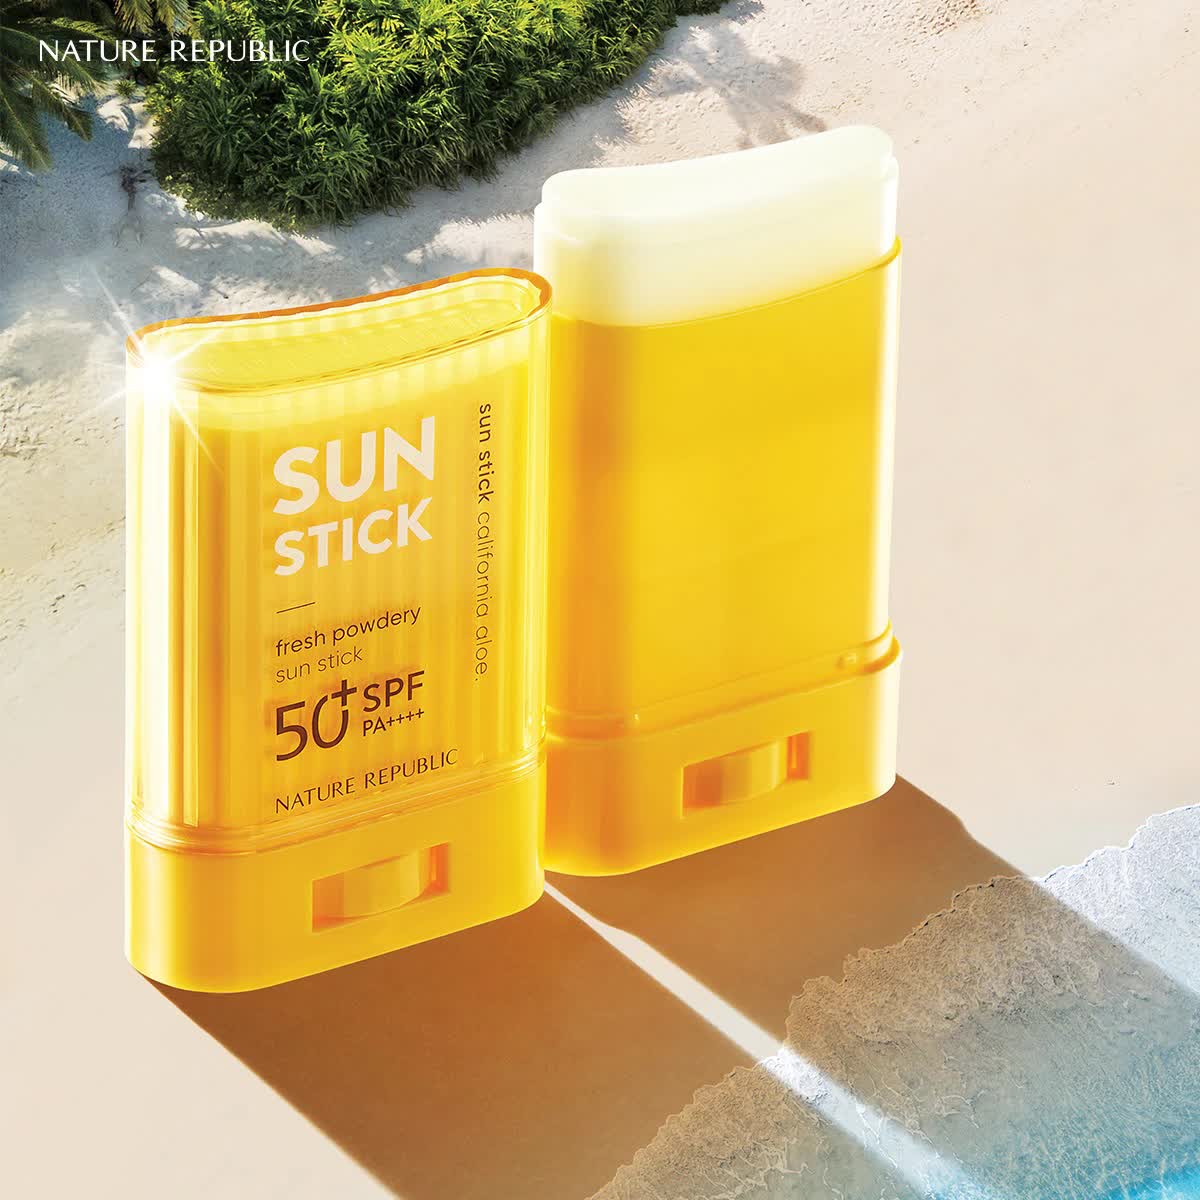 5 tuyệt chiêu dùng kem chống nắng hiệu quả, giúp bảo vệ da đúng cách - Ảnh 2.